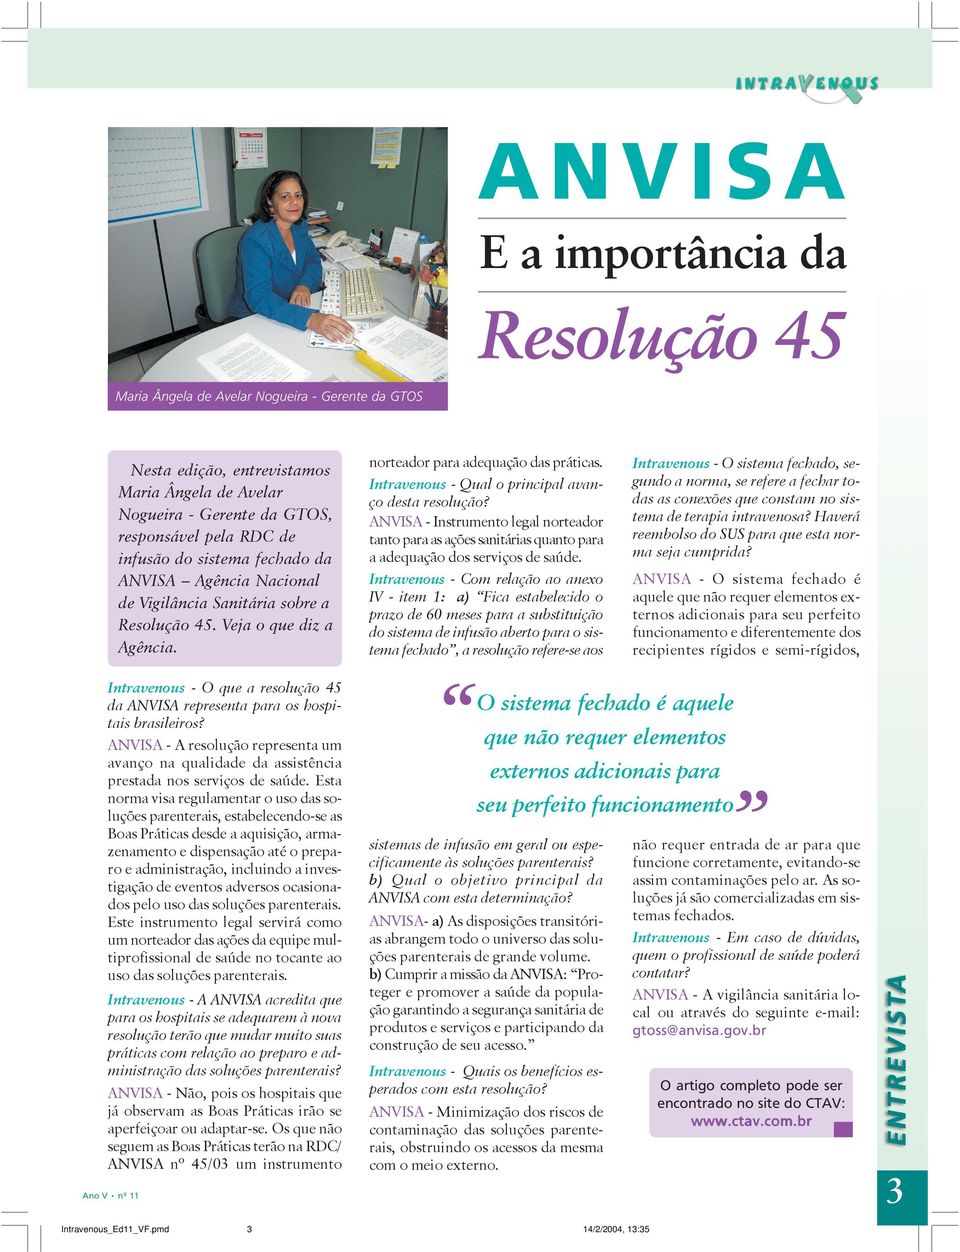 Intravenous - Qual o principal avanço desta resolução? ANVISA - Instrumento legal norteador tanto para as ações sanitárias quanto para a adequação dos serviços de saúde.